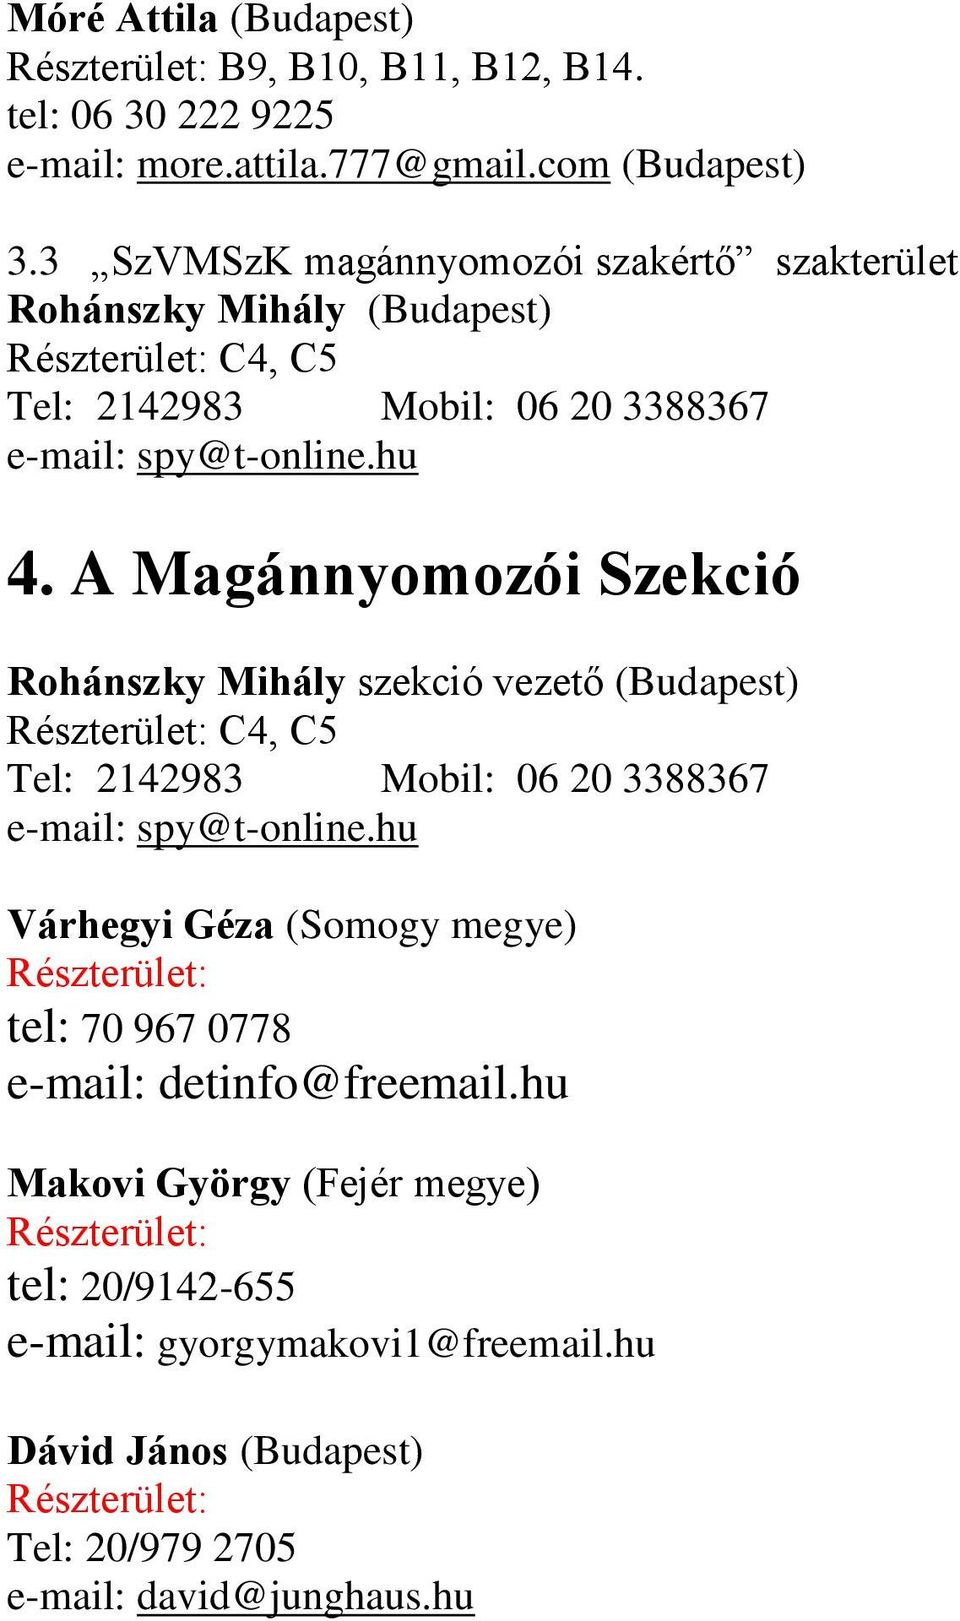 A Magánnyomozói Szekció Rohánszky Mihály szekció vezető (Budapest) C4, C5 Tel: 2142983 Mobil: 06 20 3388367 e-mail: spy@t-online.